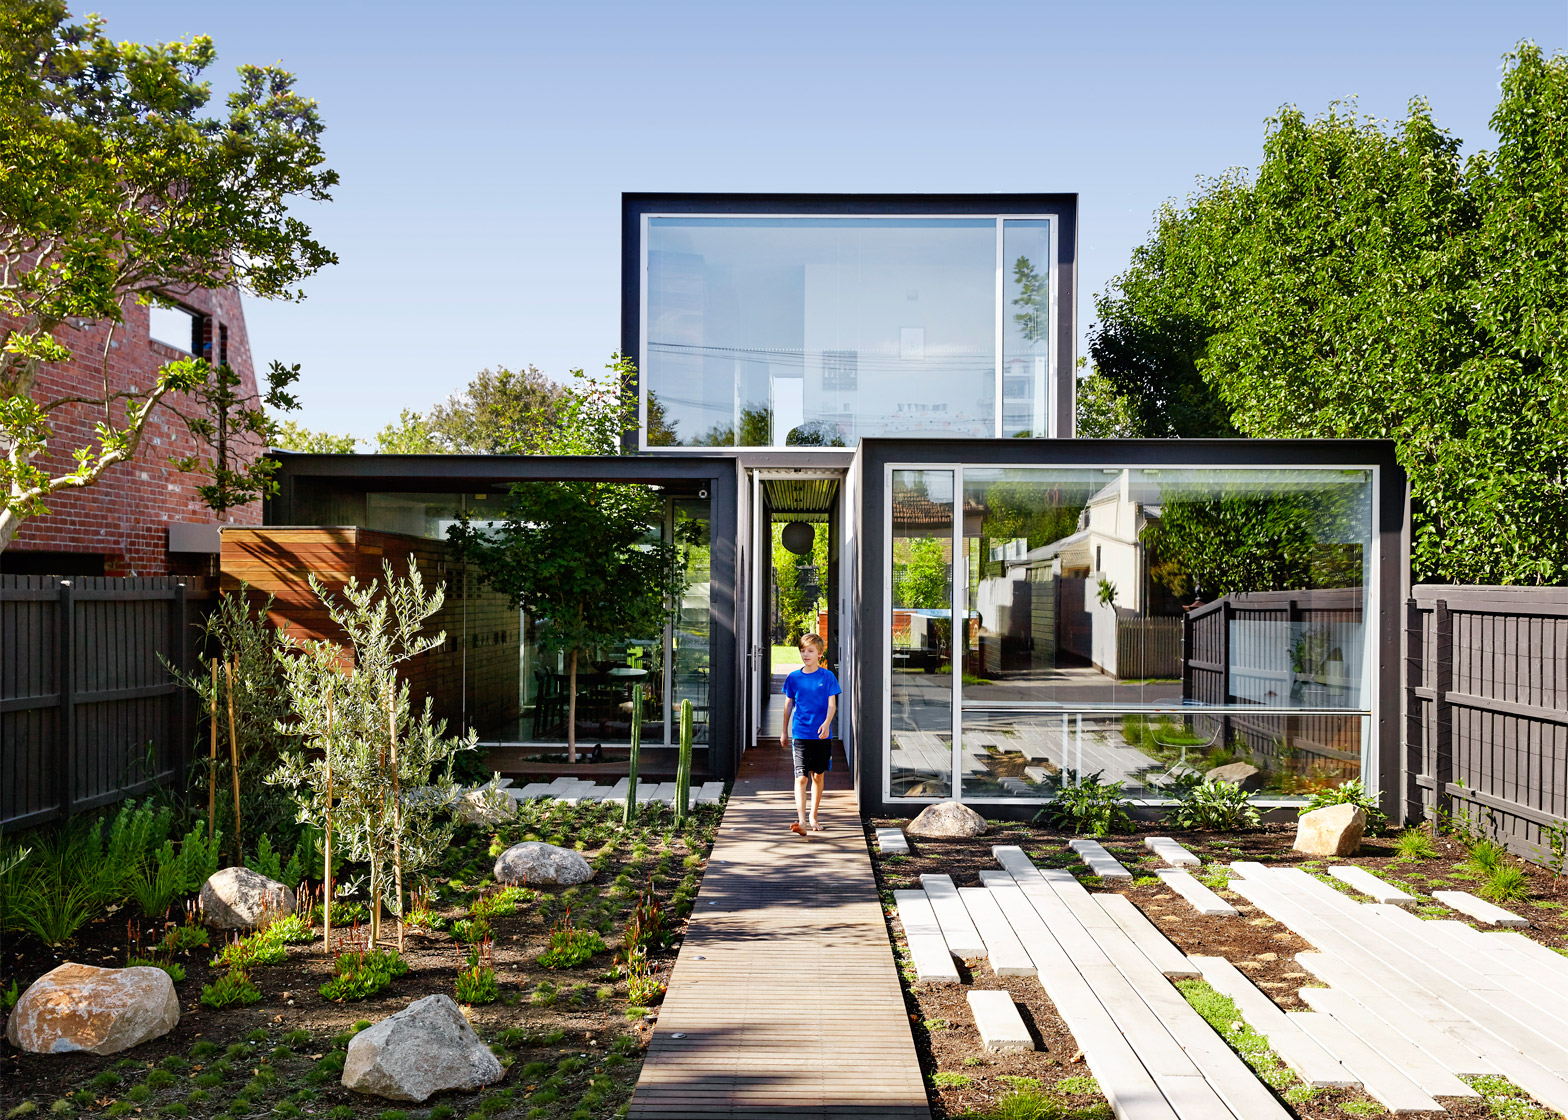 Green House I migliori architetti del mondo insieme per un futuro più sostenibile